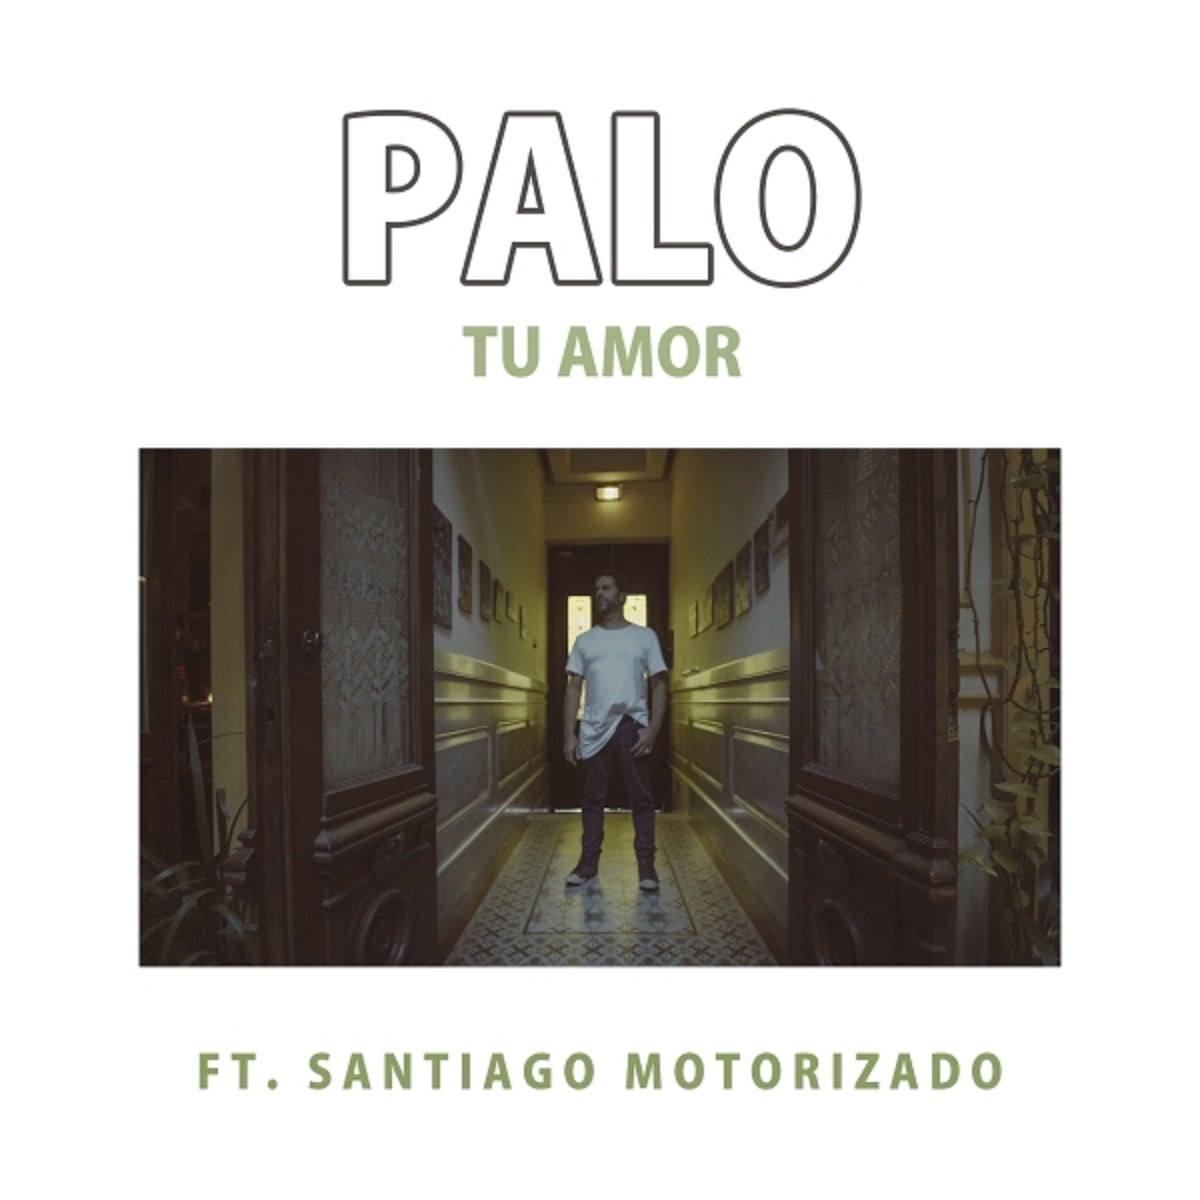 Palo Pandolfo y Santiago Motorizado presentan "Tu amor"